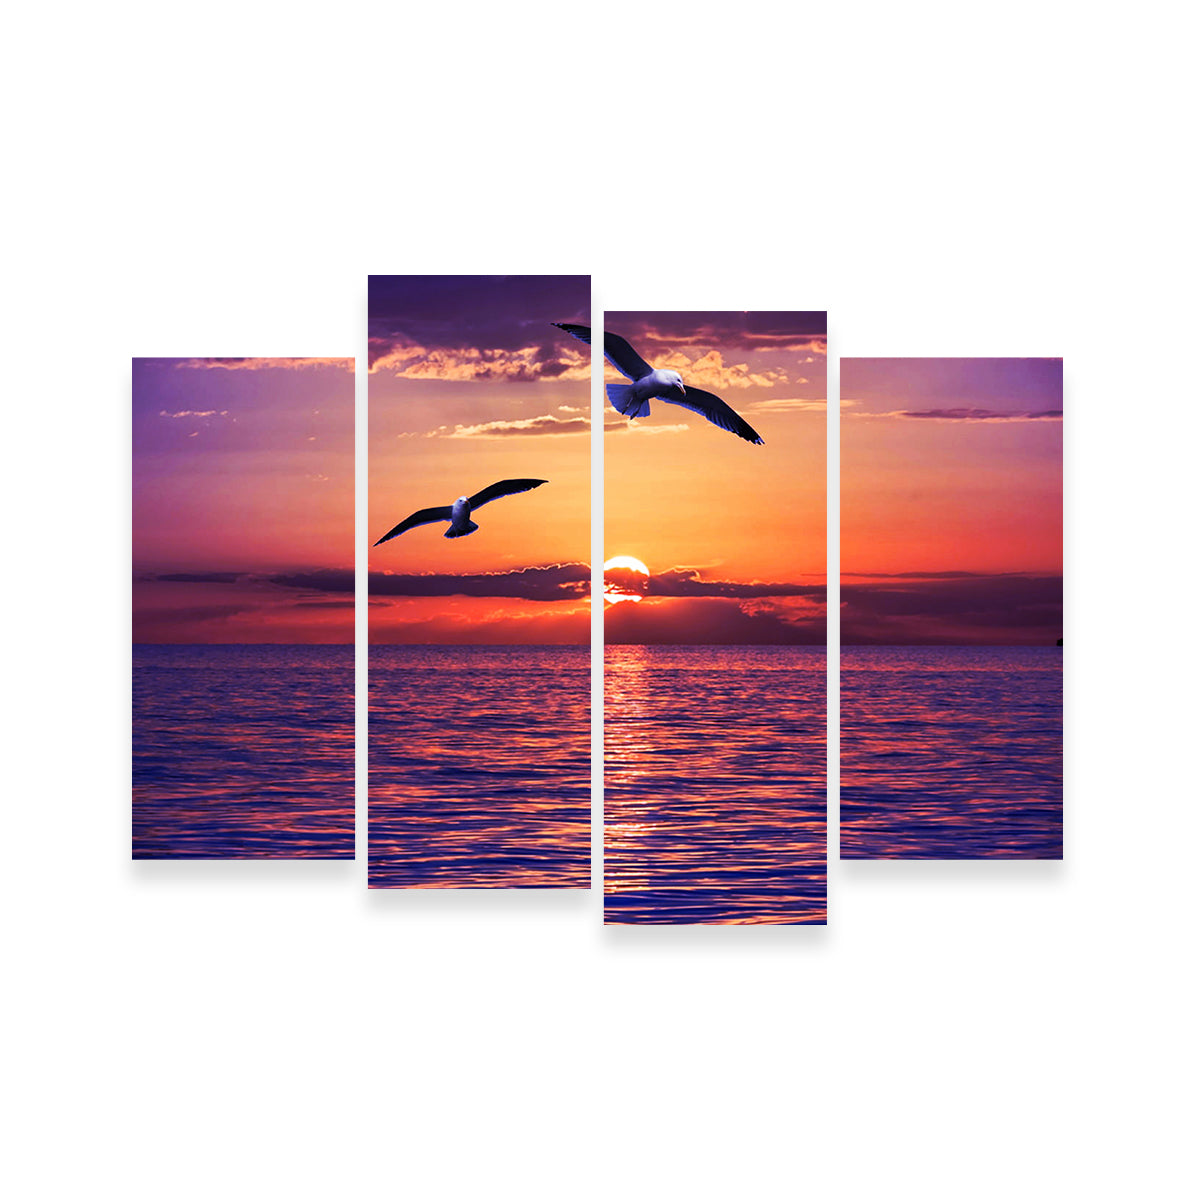 Sunset Seagulls